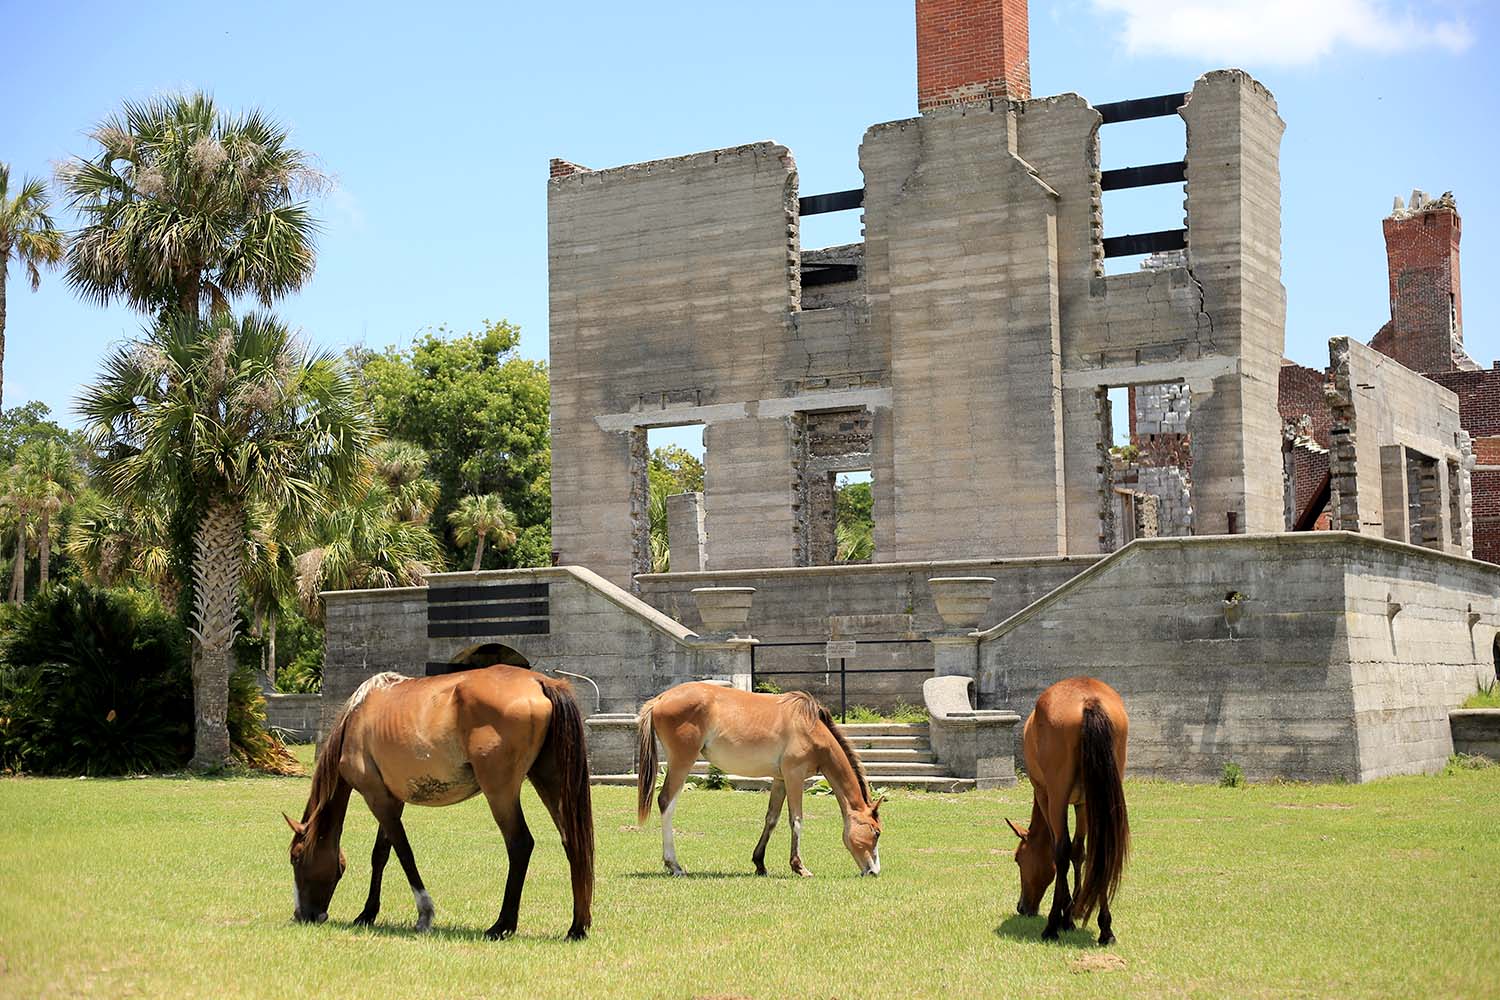 Wild Horses Eating near Ruins on Cumberland Island, Georgia